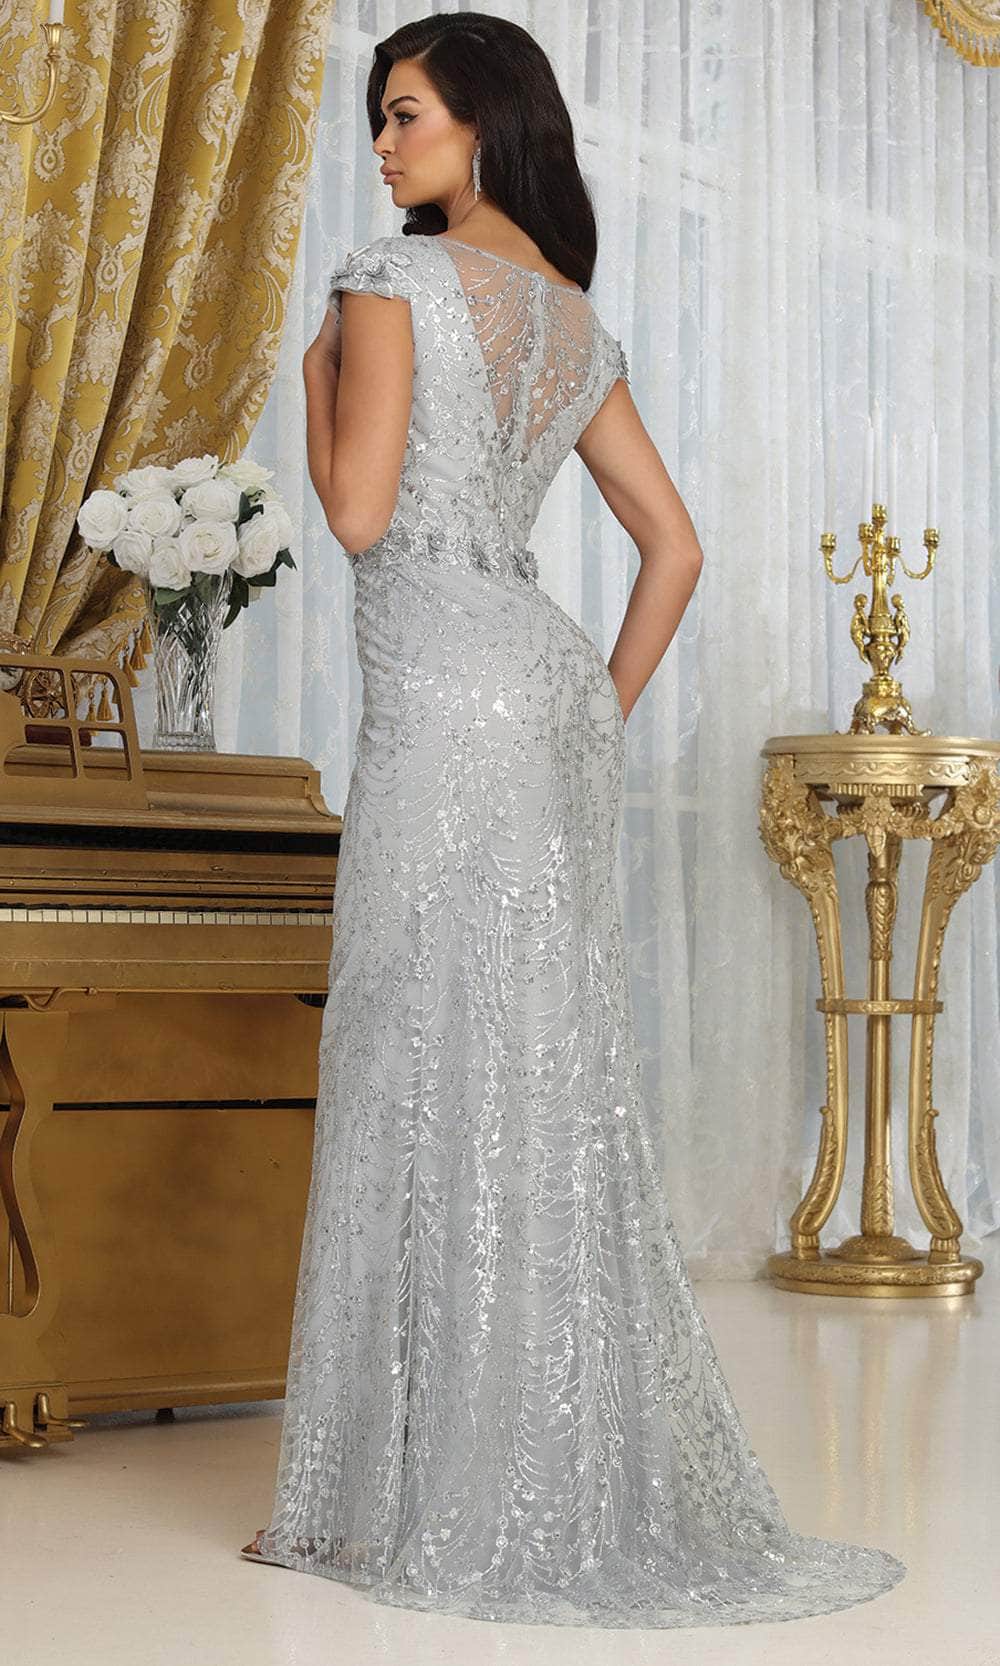 May Queen MQ2062 - Glitter Sheath Evening Dress Evening Dresses